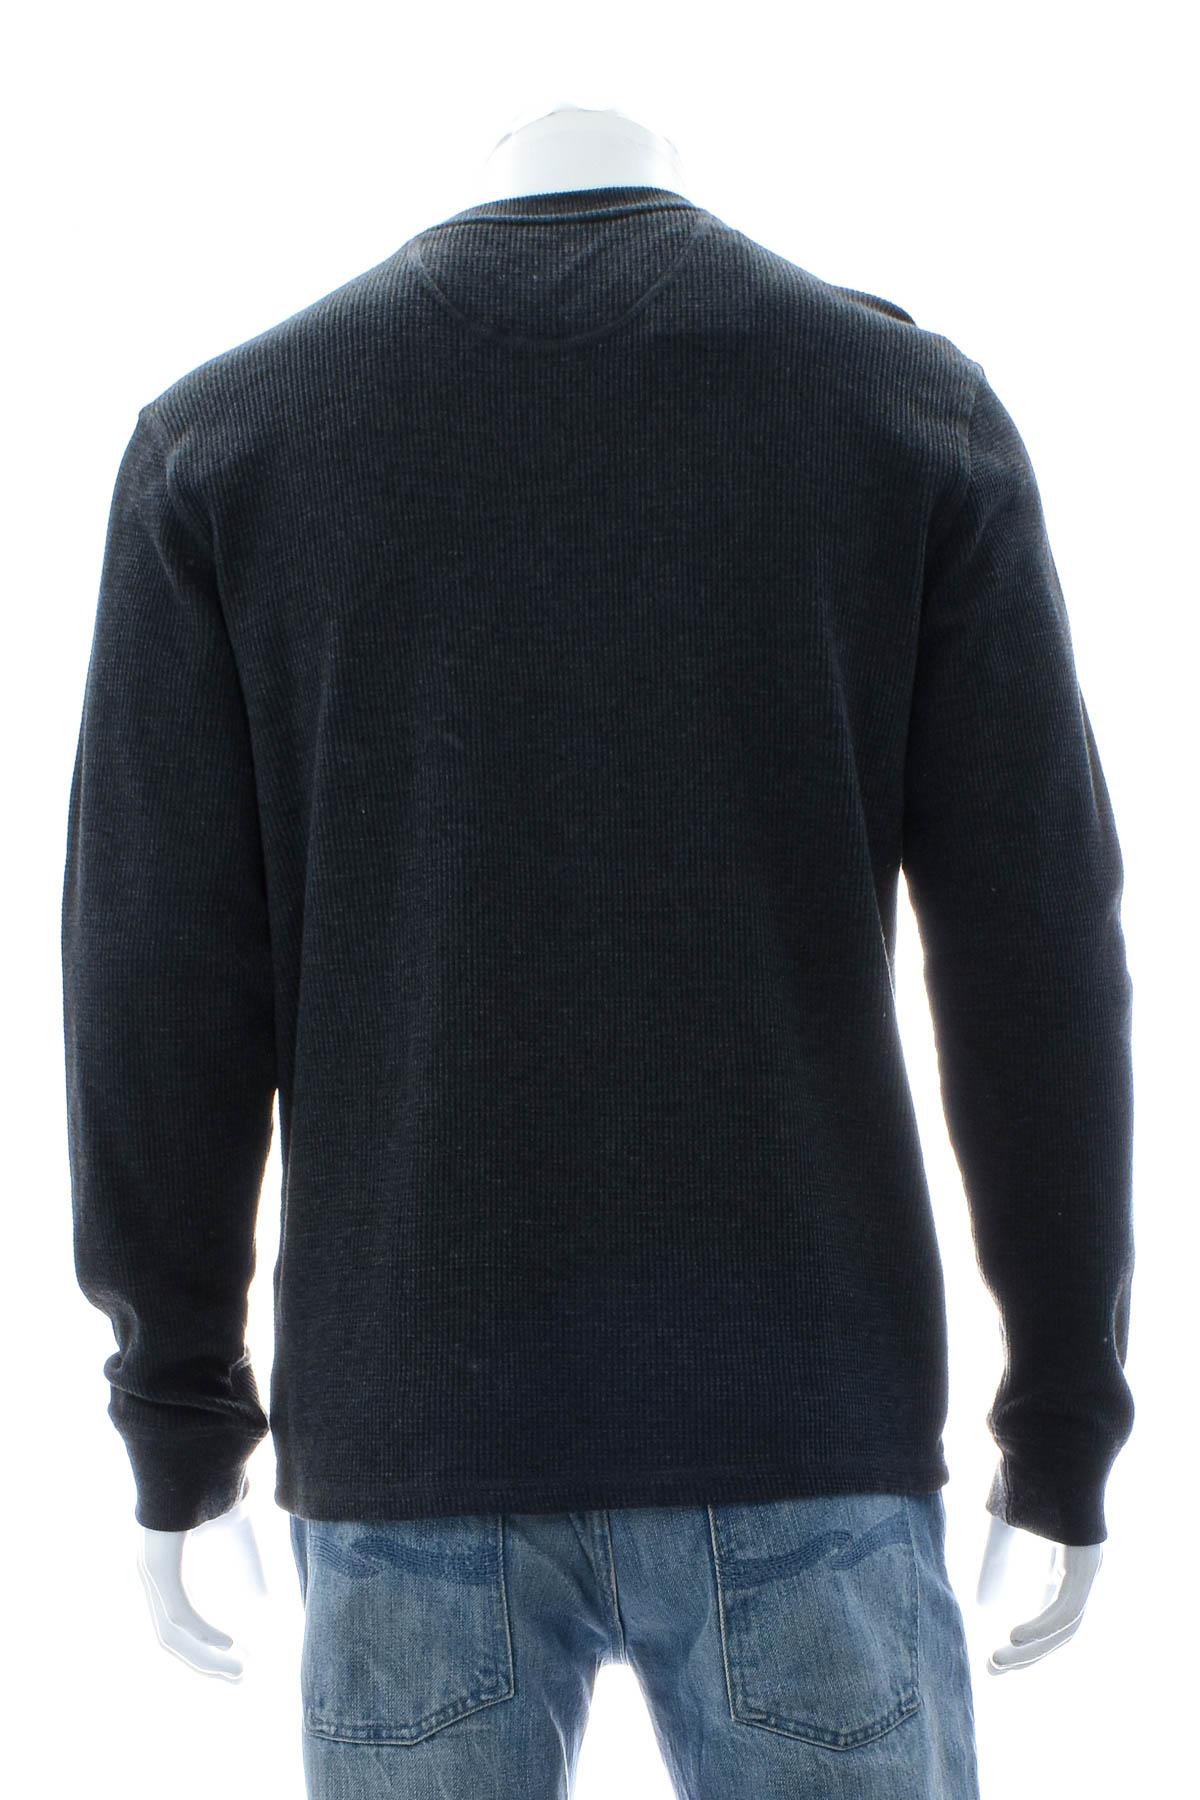 Men's sweater - Member's Mark - 1